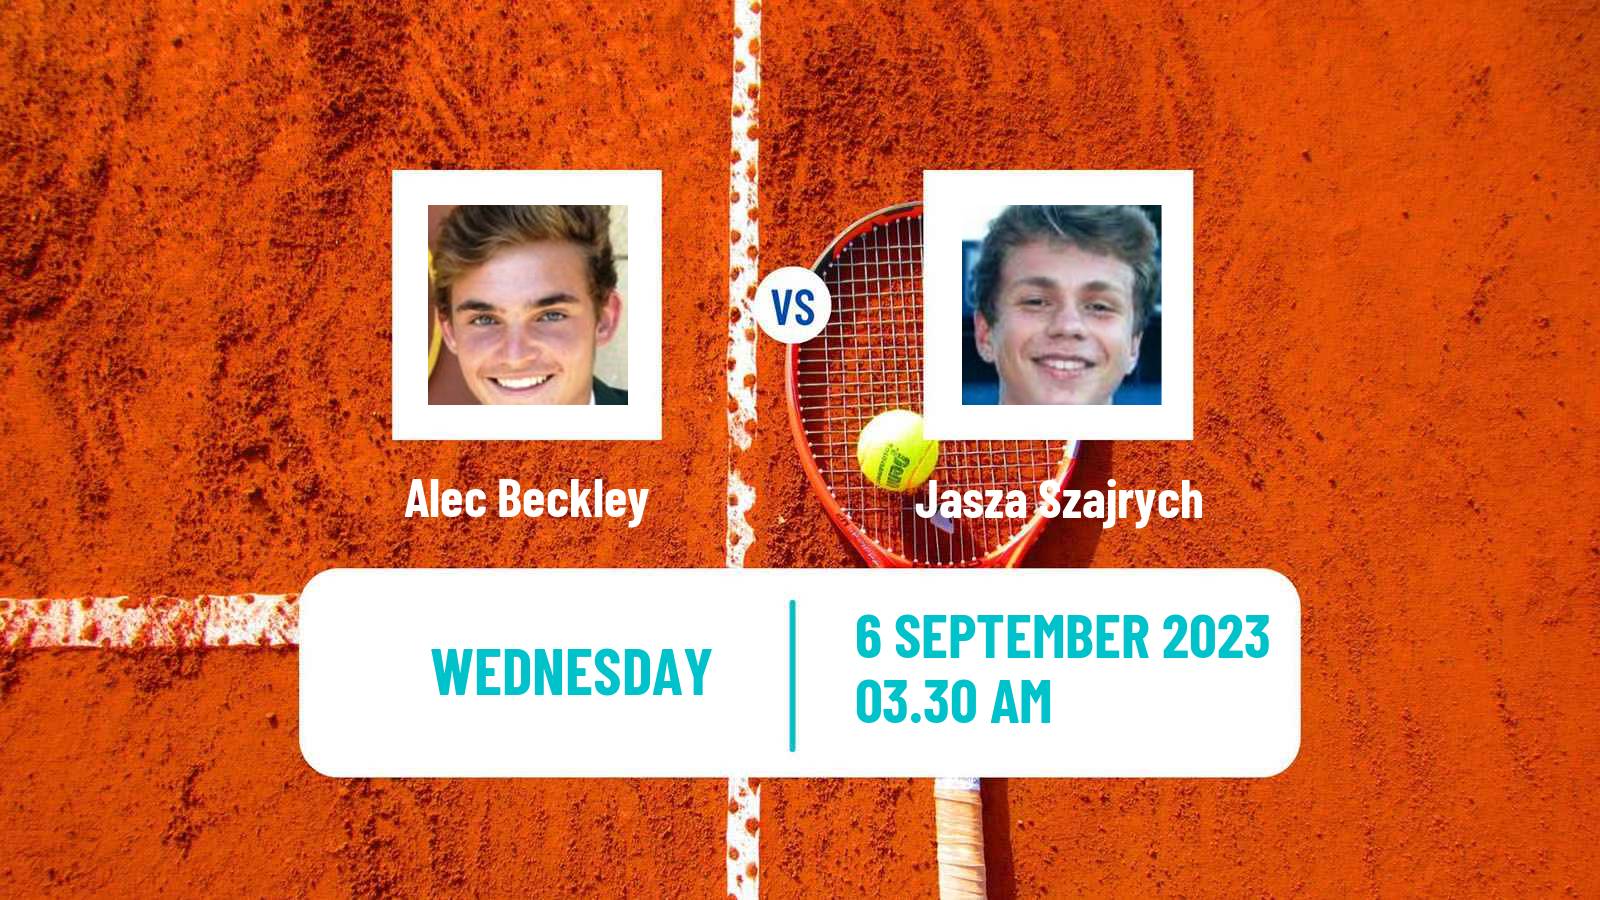 Tennis ITF M15 Koszalin Men 2023 Alec Beckley - Jasza Szajrych